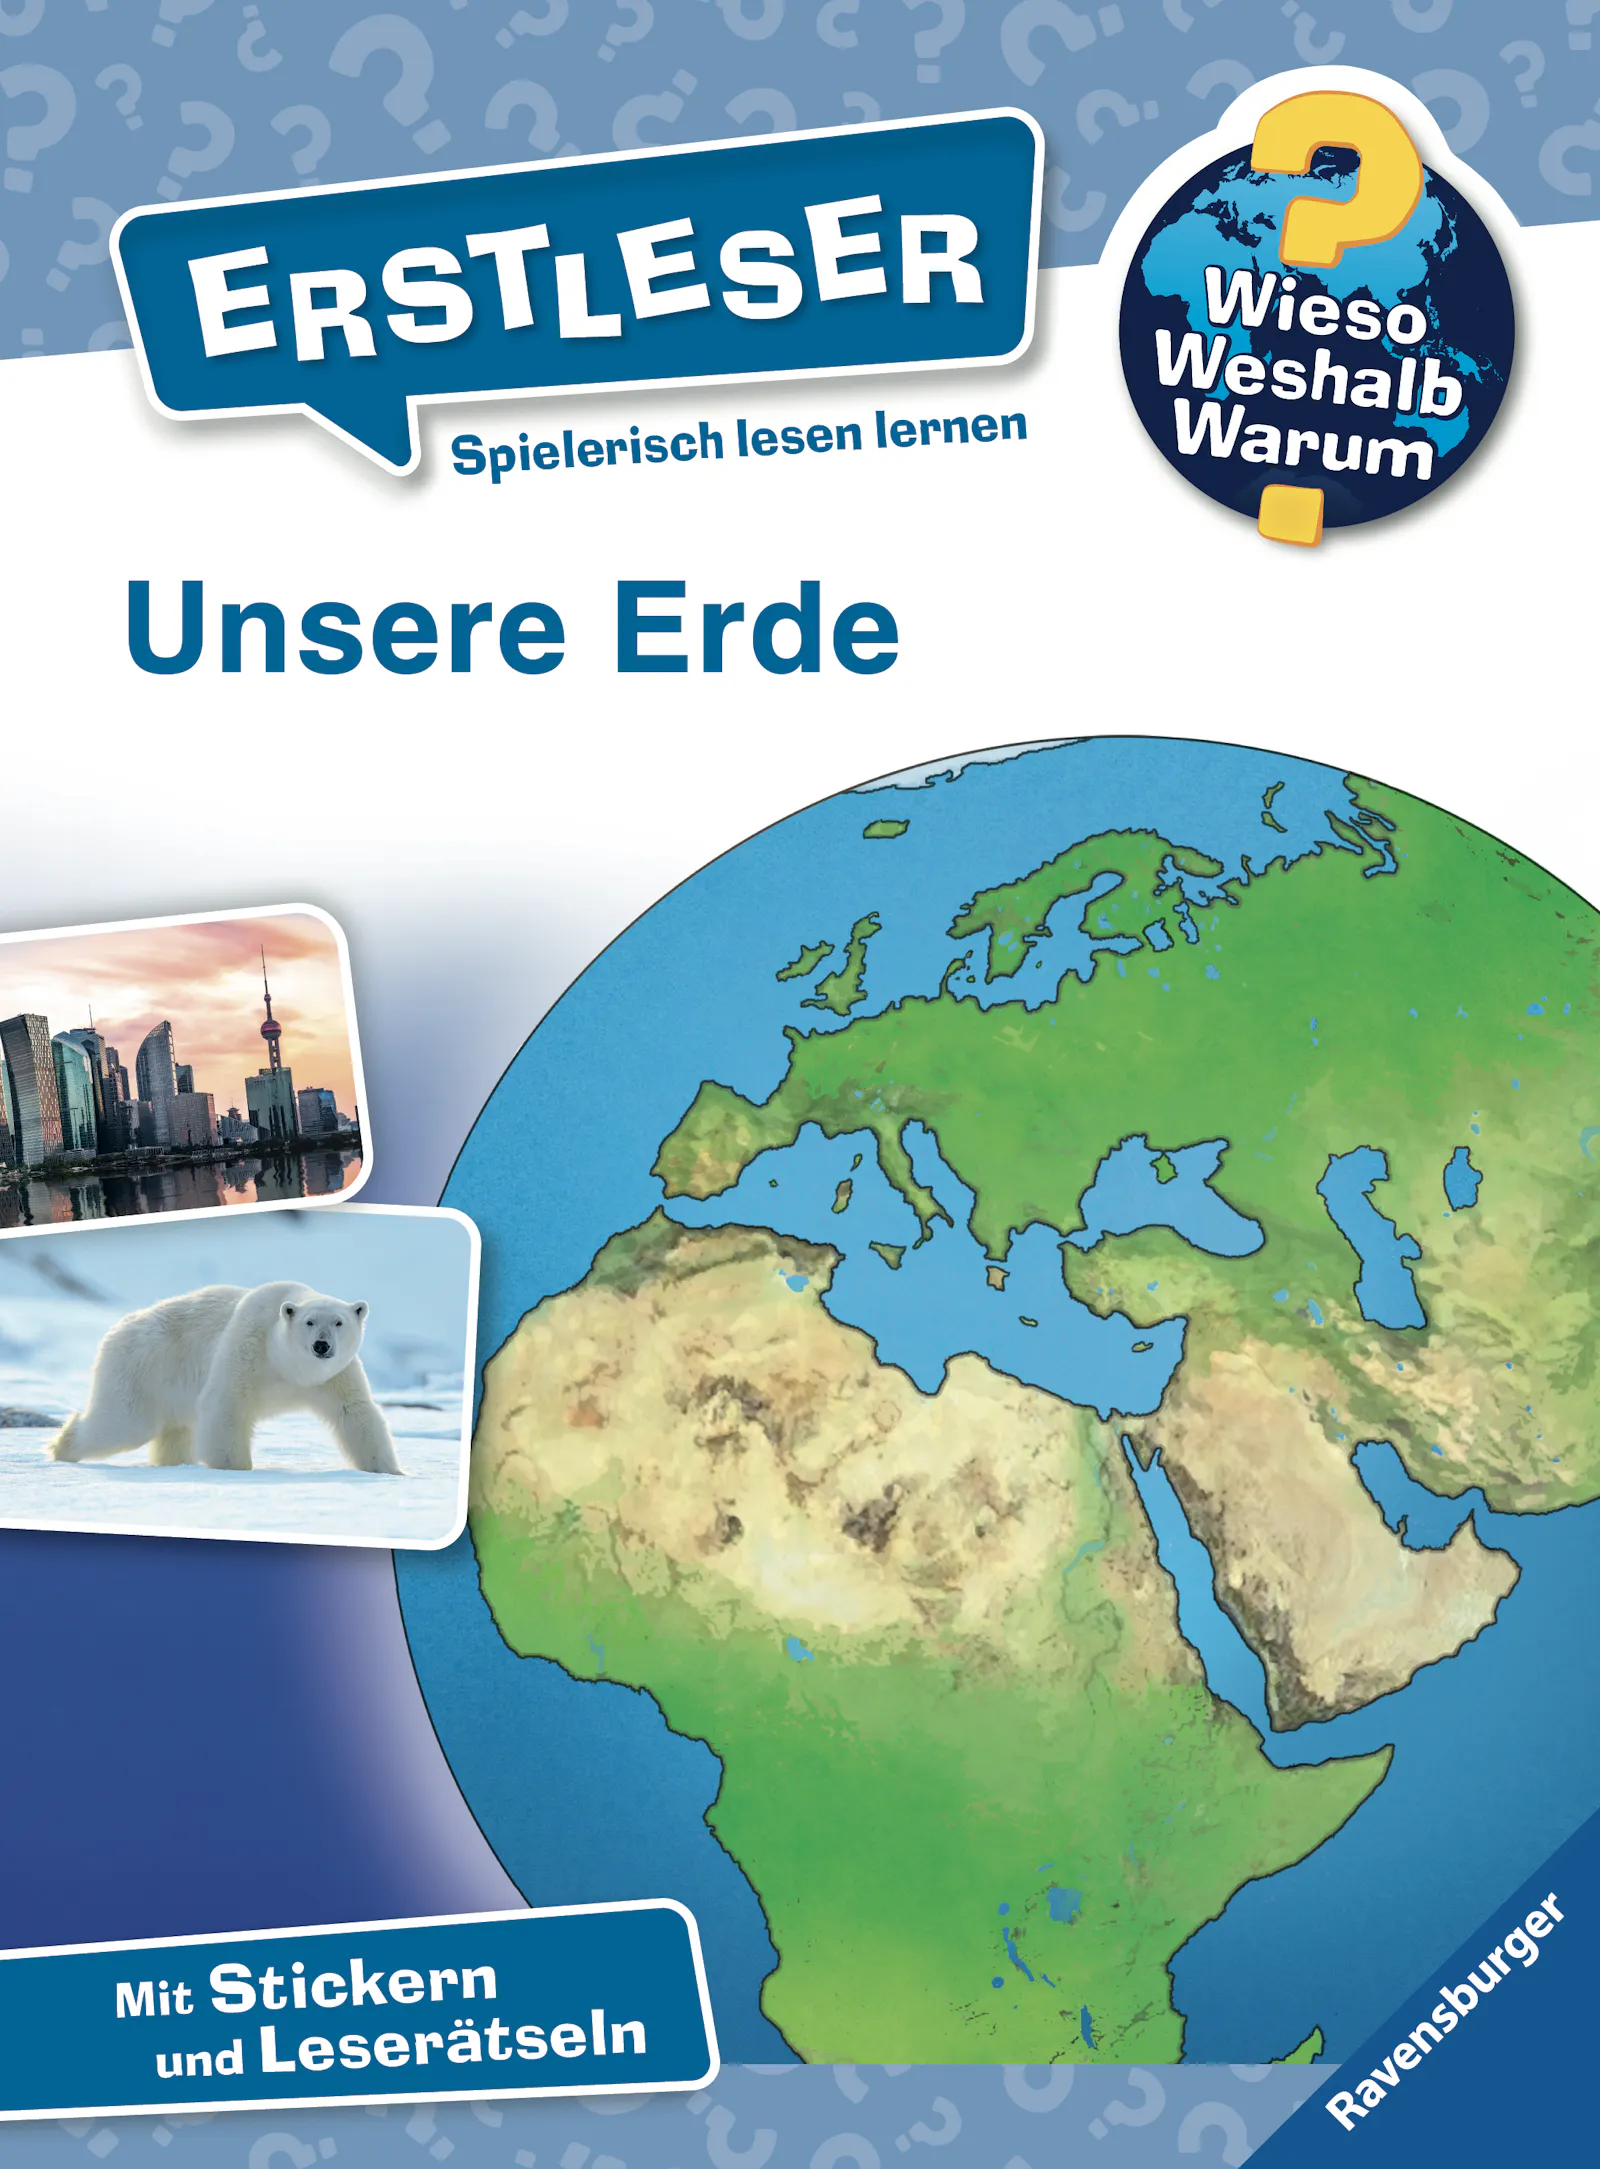 Cover von "Wieso weshalb warum - Erstleser: Unsere Erde" aus dem Ravensburger Verlag.